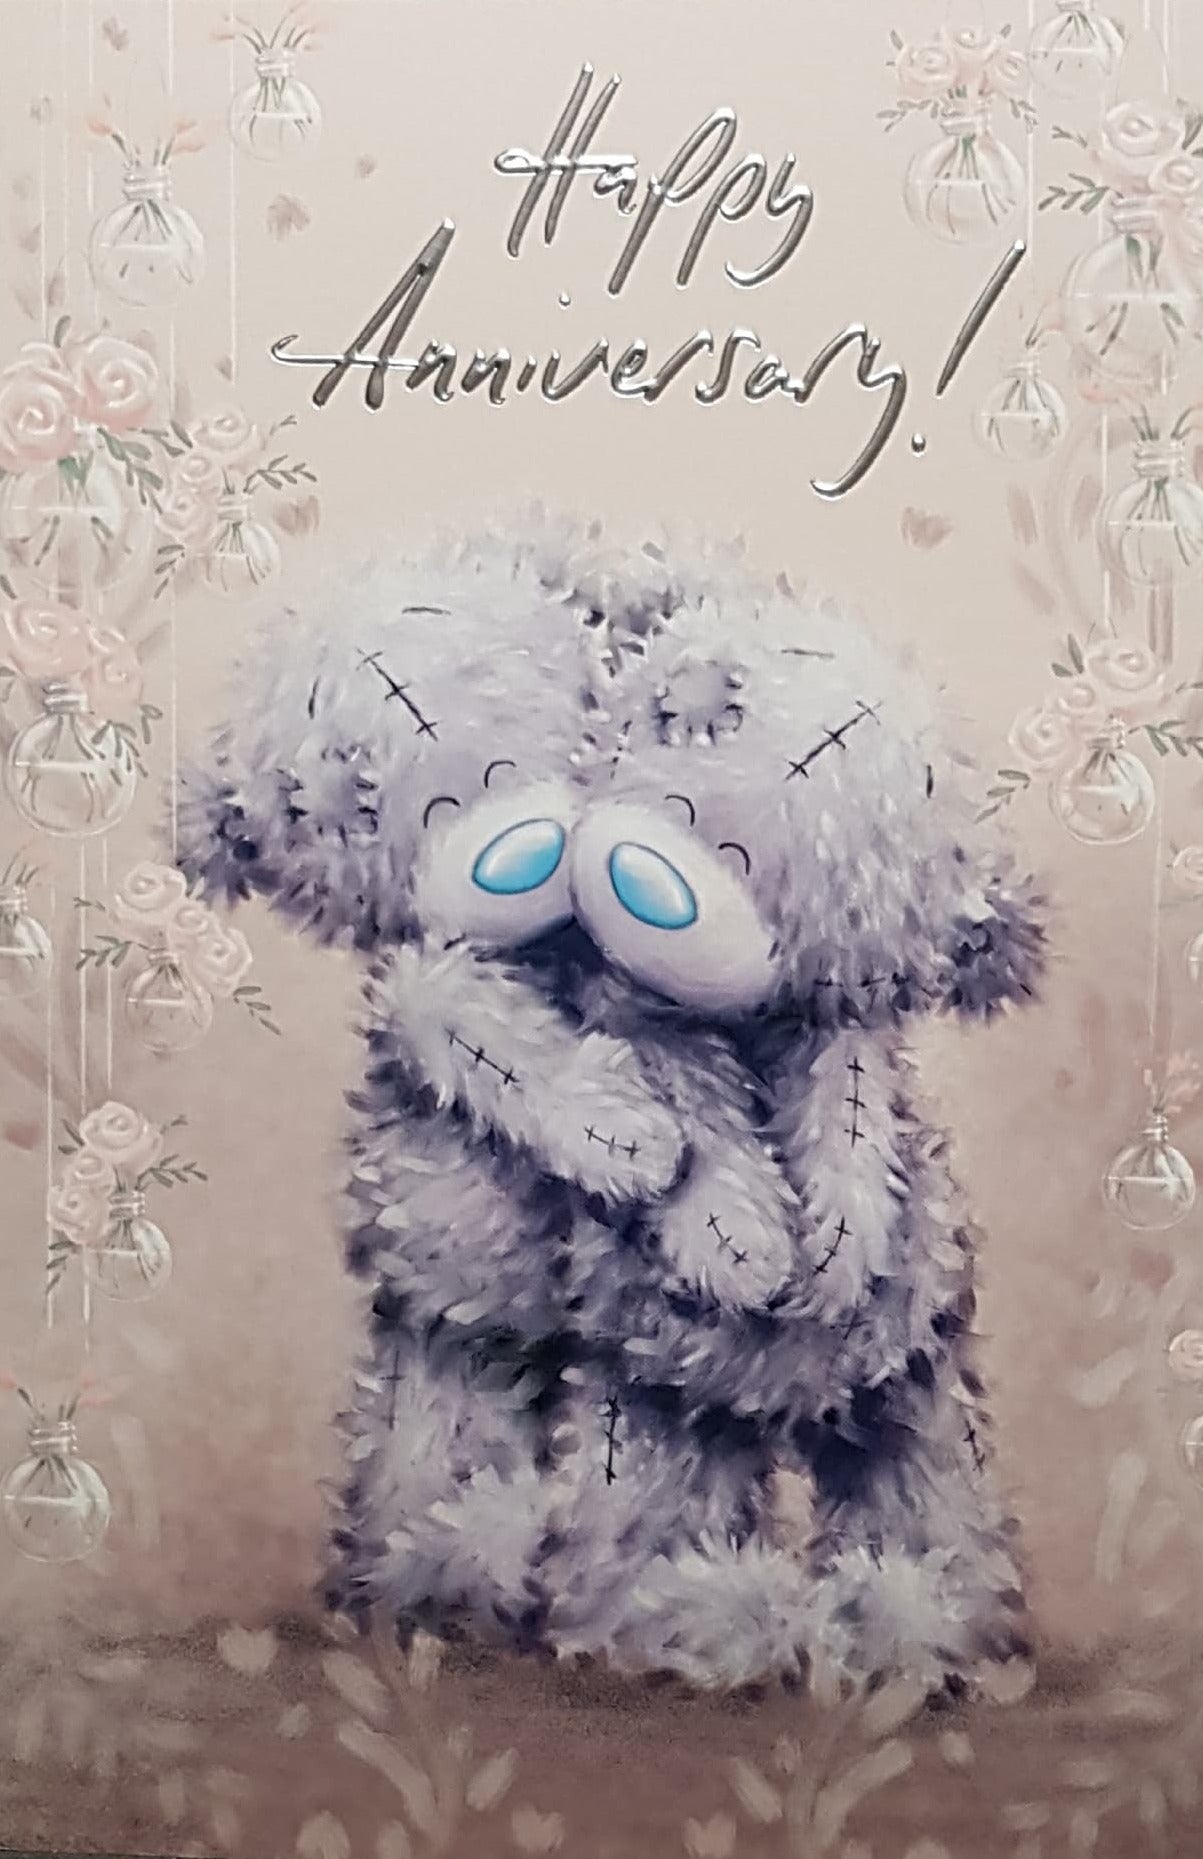 Anniversary Card - Two Fluffy Teddies Cuddling